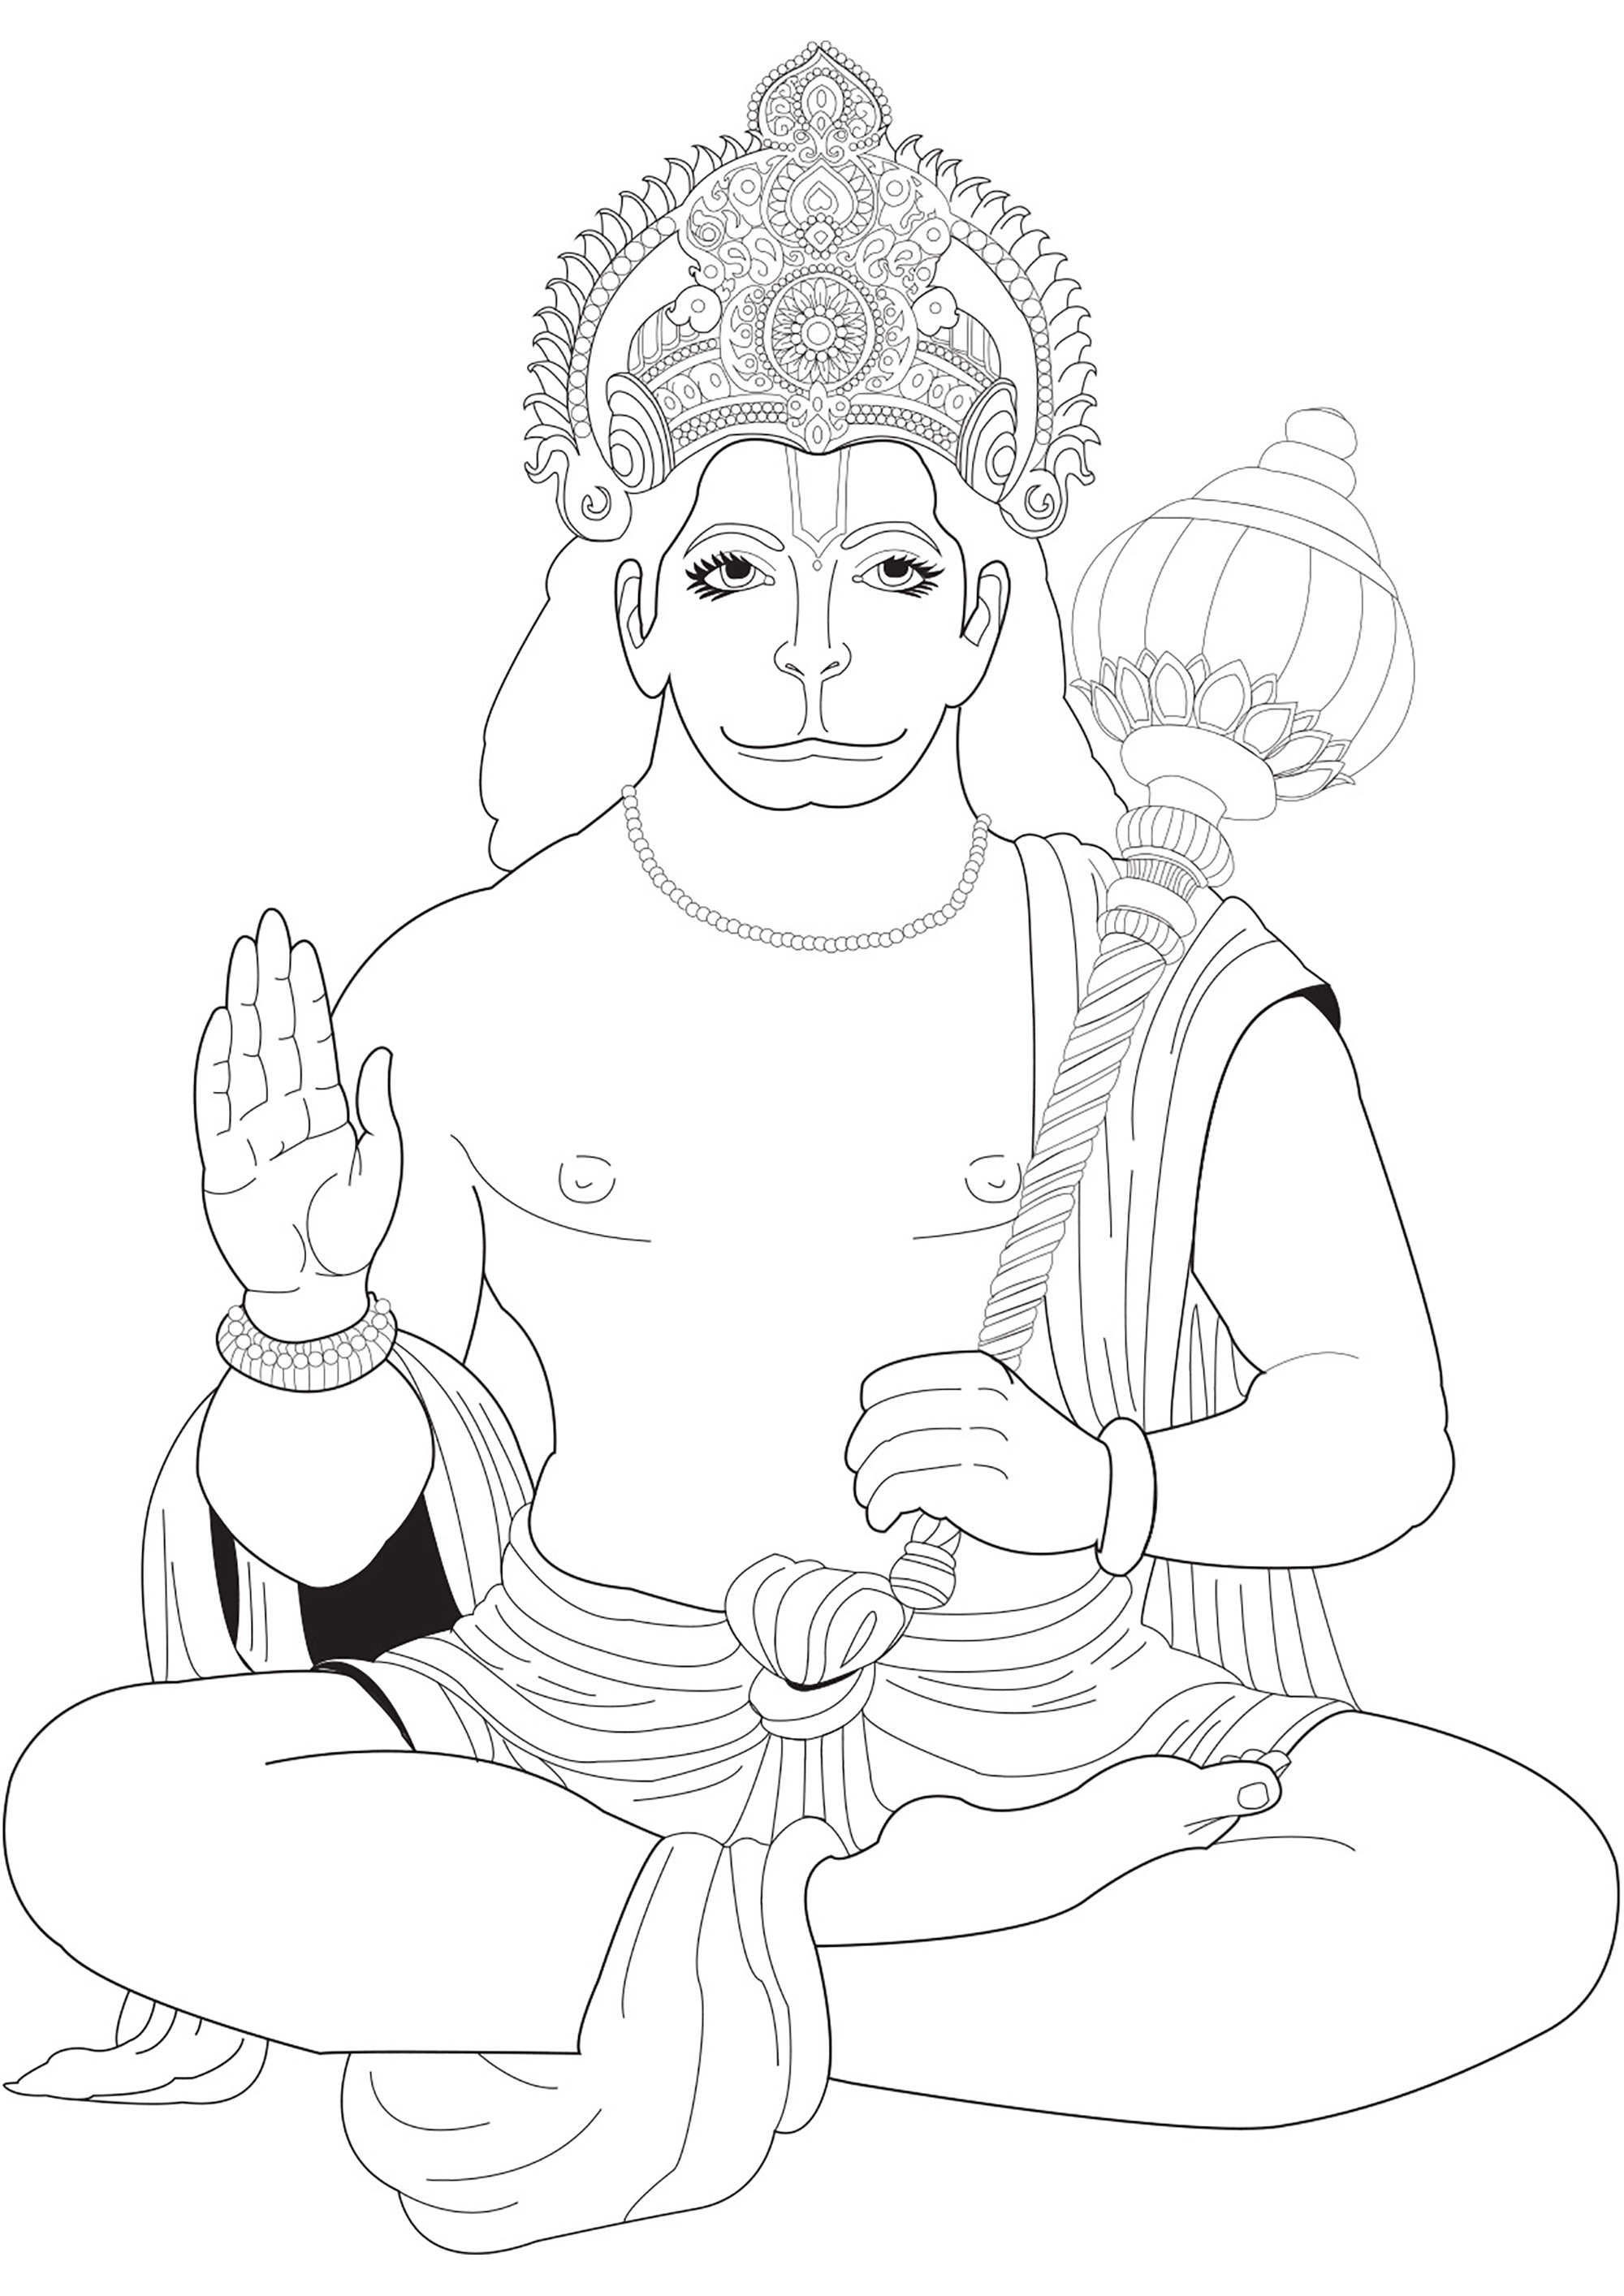 Dessin de Hanuman à colorier. Hanuman est une figure vénérée de la mythologie hindoue, considérée comme le dieu singe et disciple dévoué du Seigneur Rama, célébré pour sa force extraordinaire et sa loyauté inébranlable dans l'épopée du Ramayana.